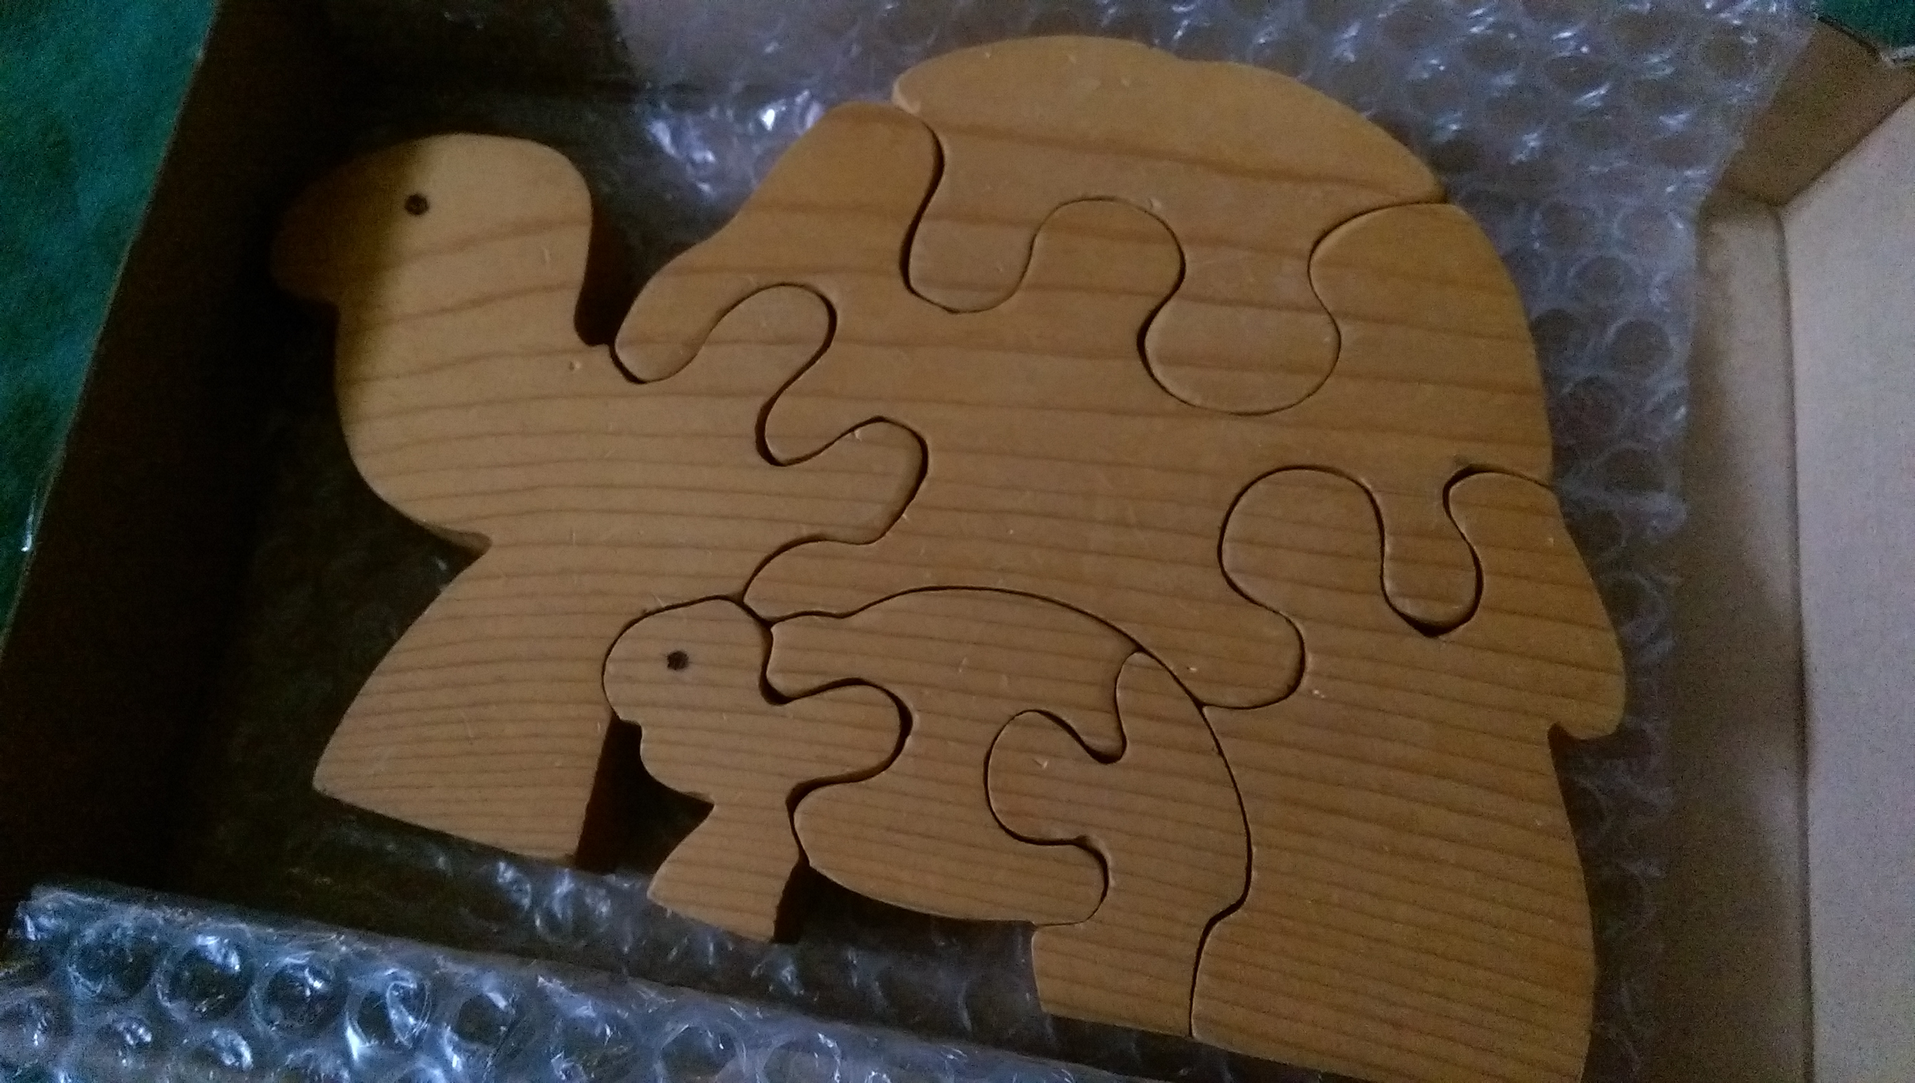 Kinderholzpuzzle, das zwei Schildkröten darstellt, die getrennt aufgestellt werden können.